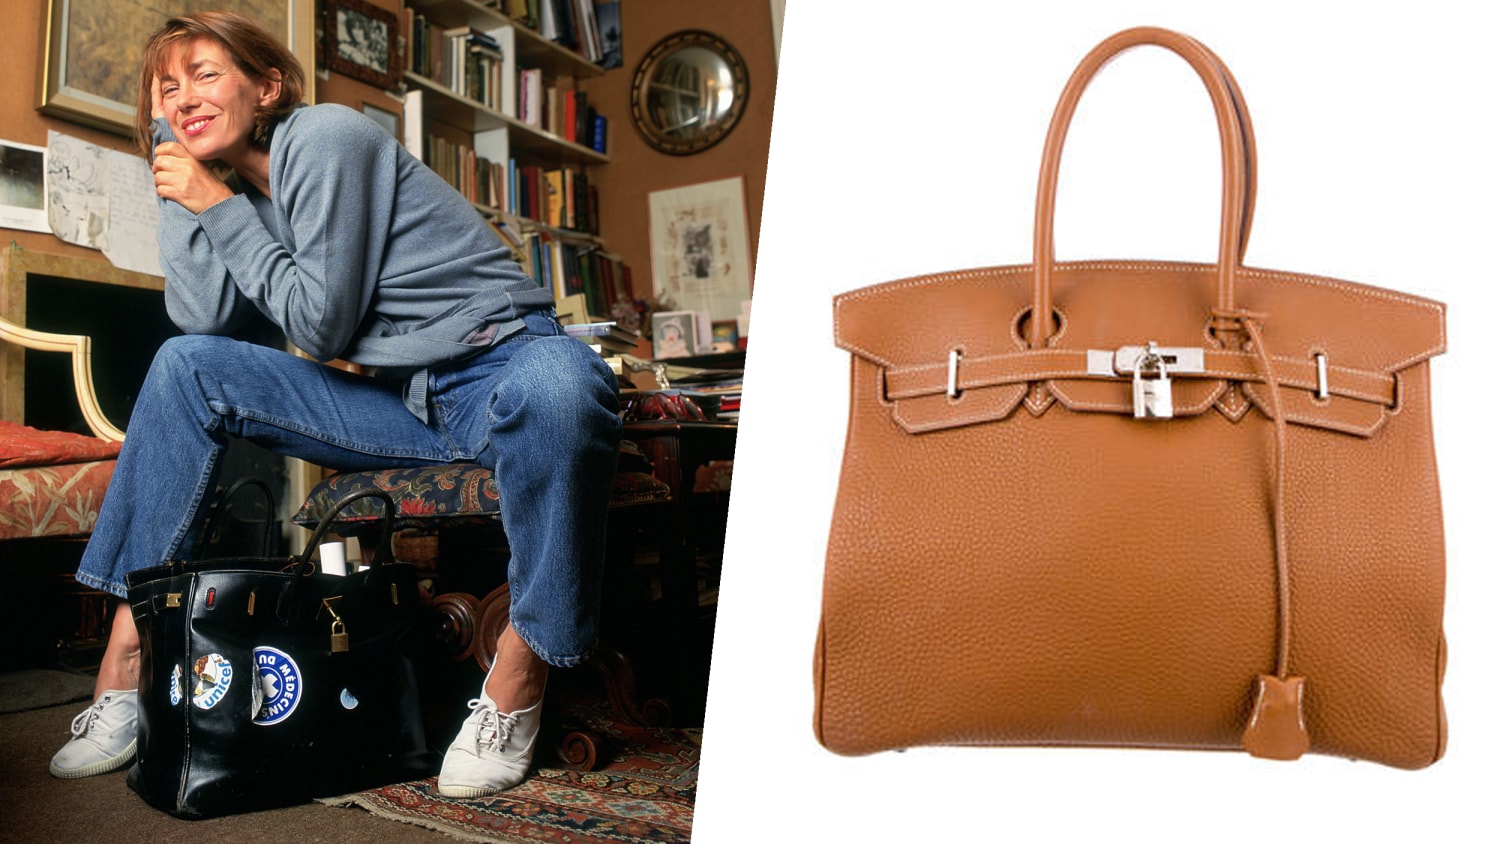 Grace Kelly Inspired This Hermes Handbag 